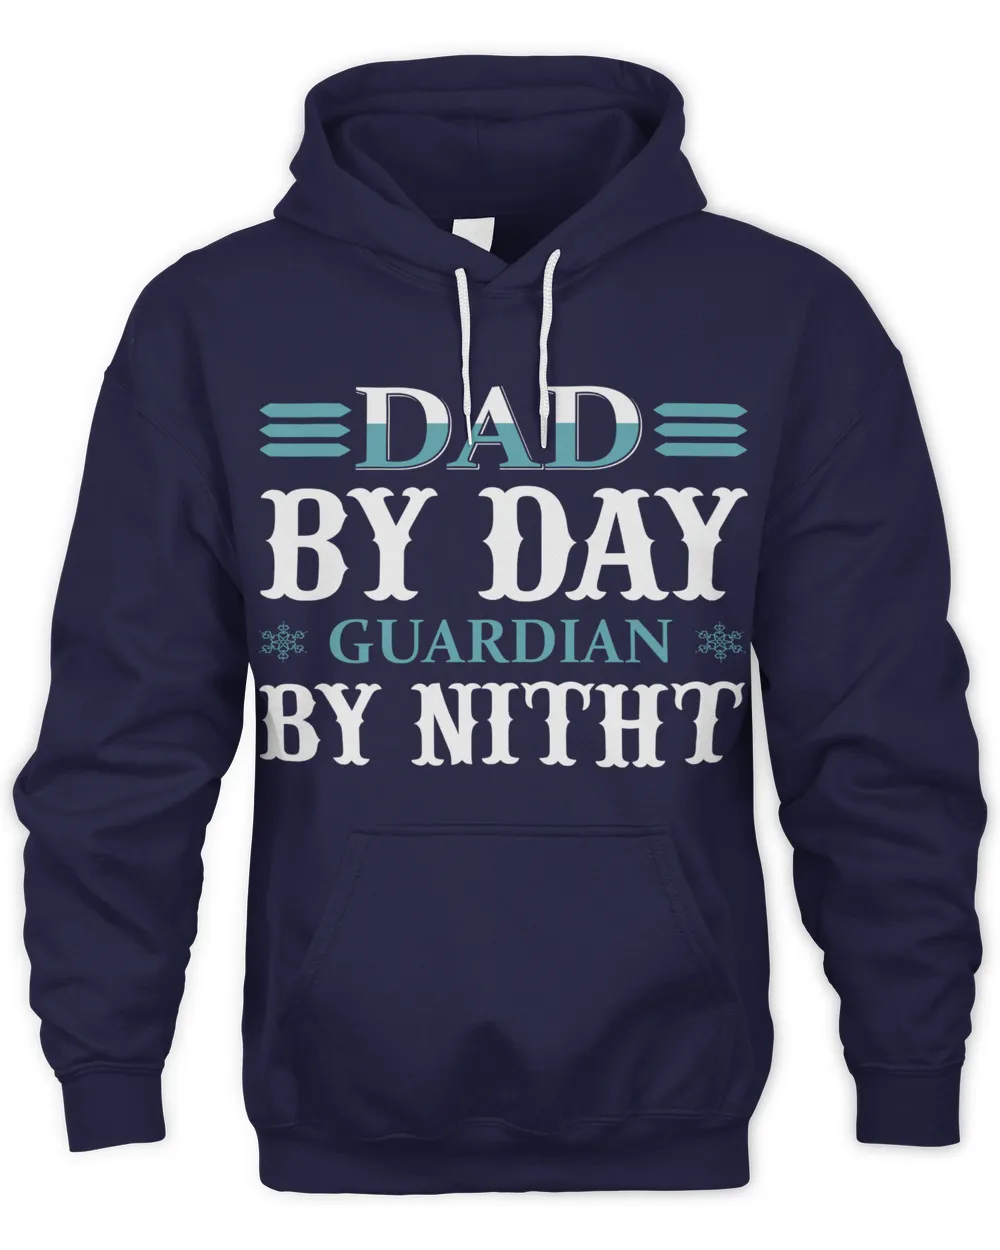 Father's Day Gifts, Father's Day Shirts, Father's Day Gift Ideas, Father's Day Gifts 2022, Gifts for Dad (68)